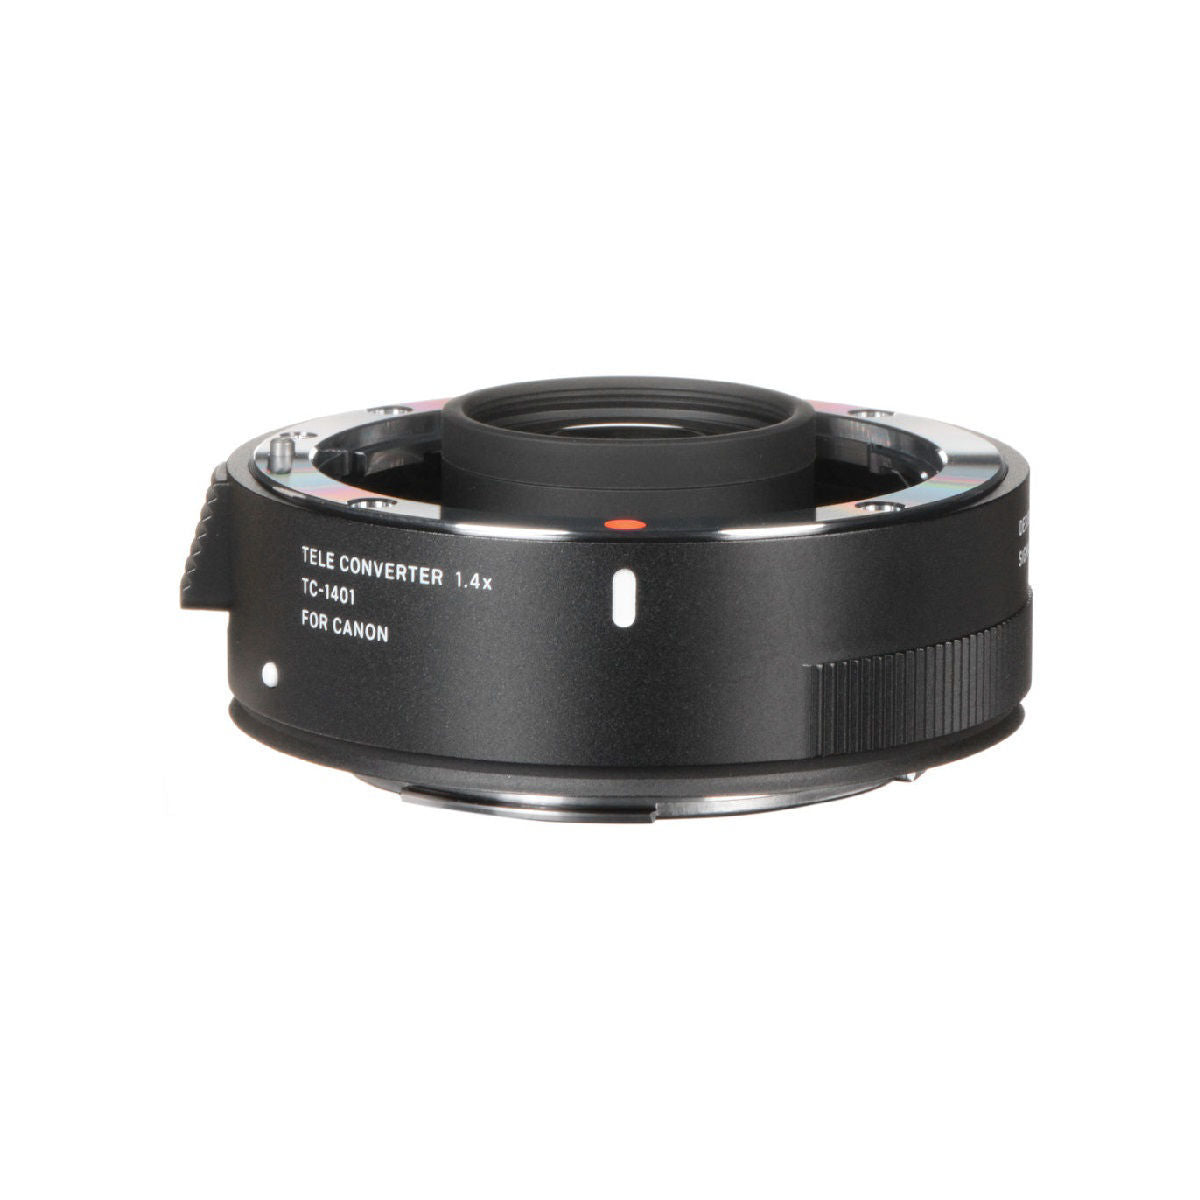 Sigma Tc-1401 1.4 x Teleconverter For Canon Ef